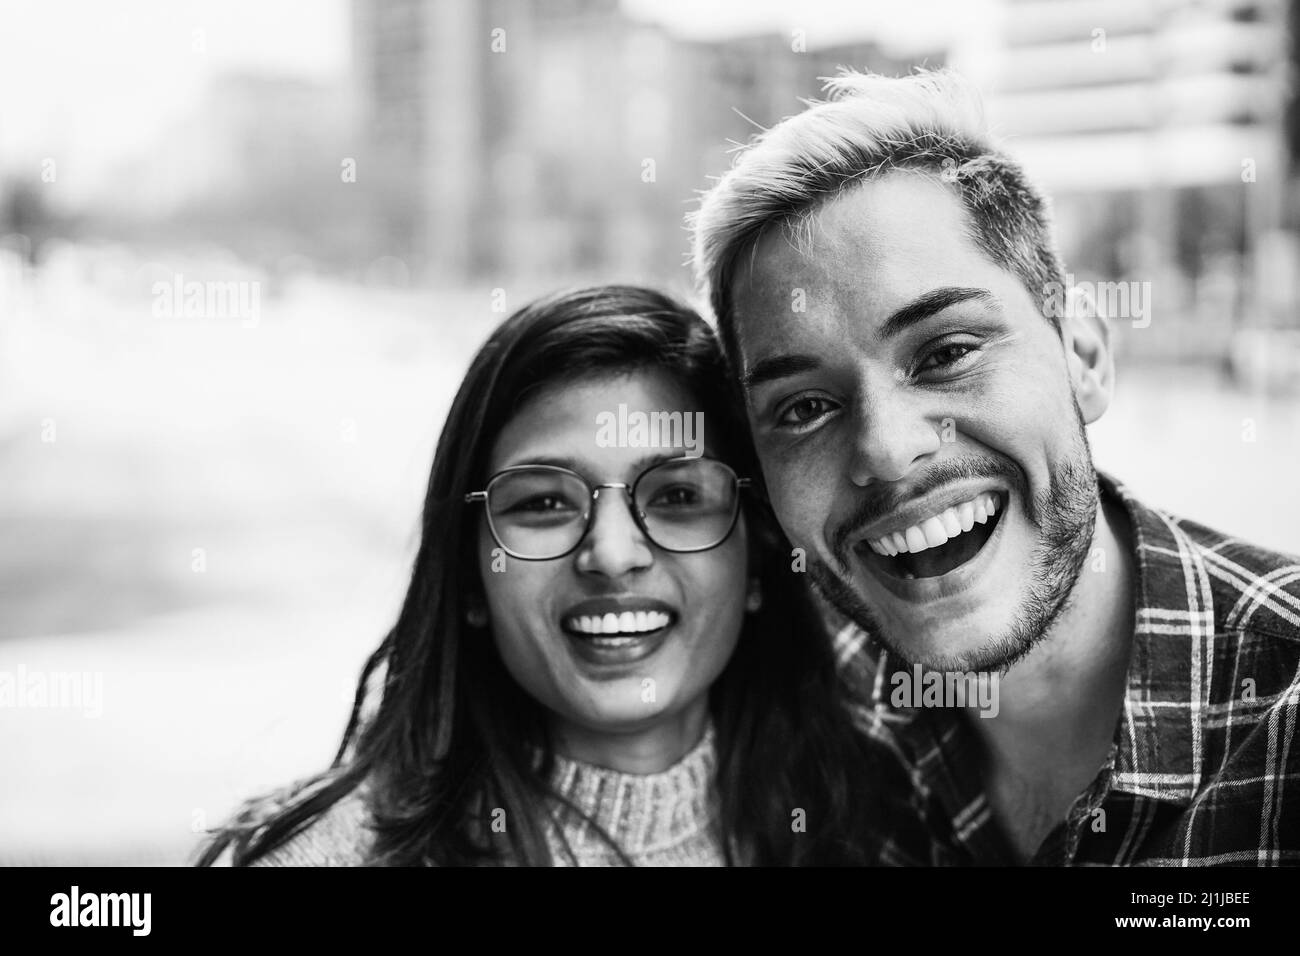 Junge Freunde mit einem Lächeln auf der Kamera im Freien - Fokus auf Homosexuell Mann trägt Make-up - Schwarz-Weiß-Edition Stockfoto